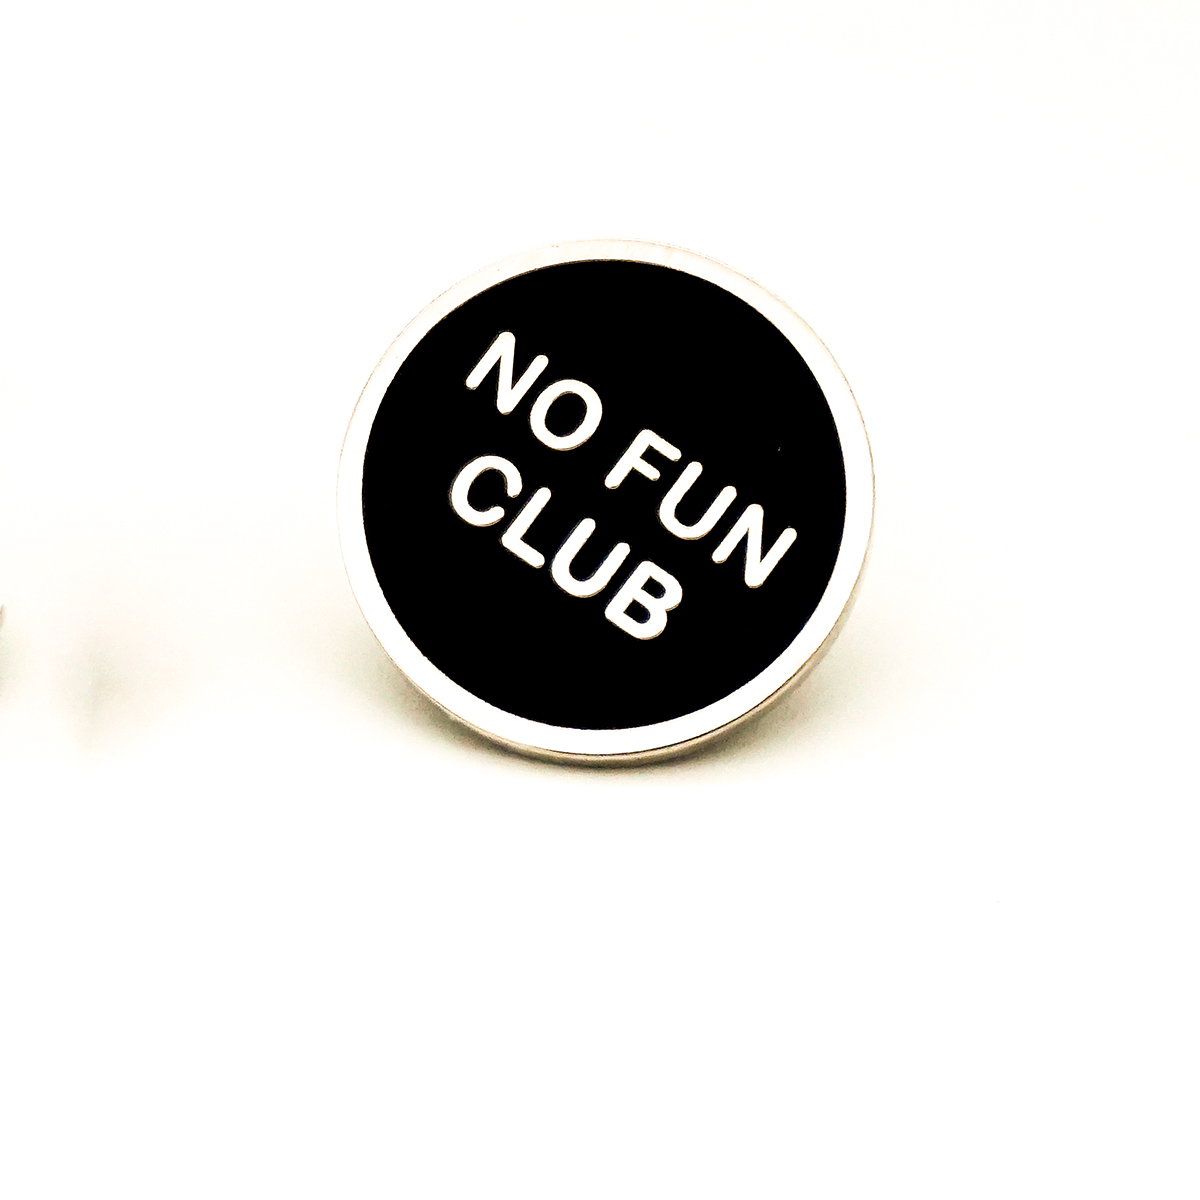 No Fun Club Pin